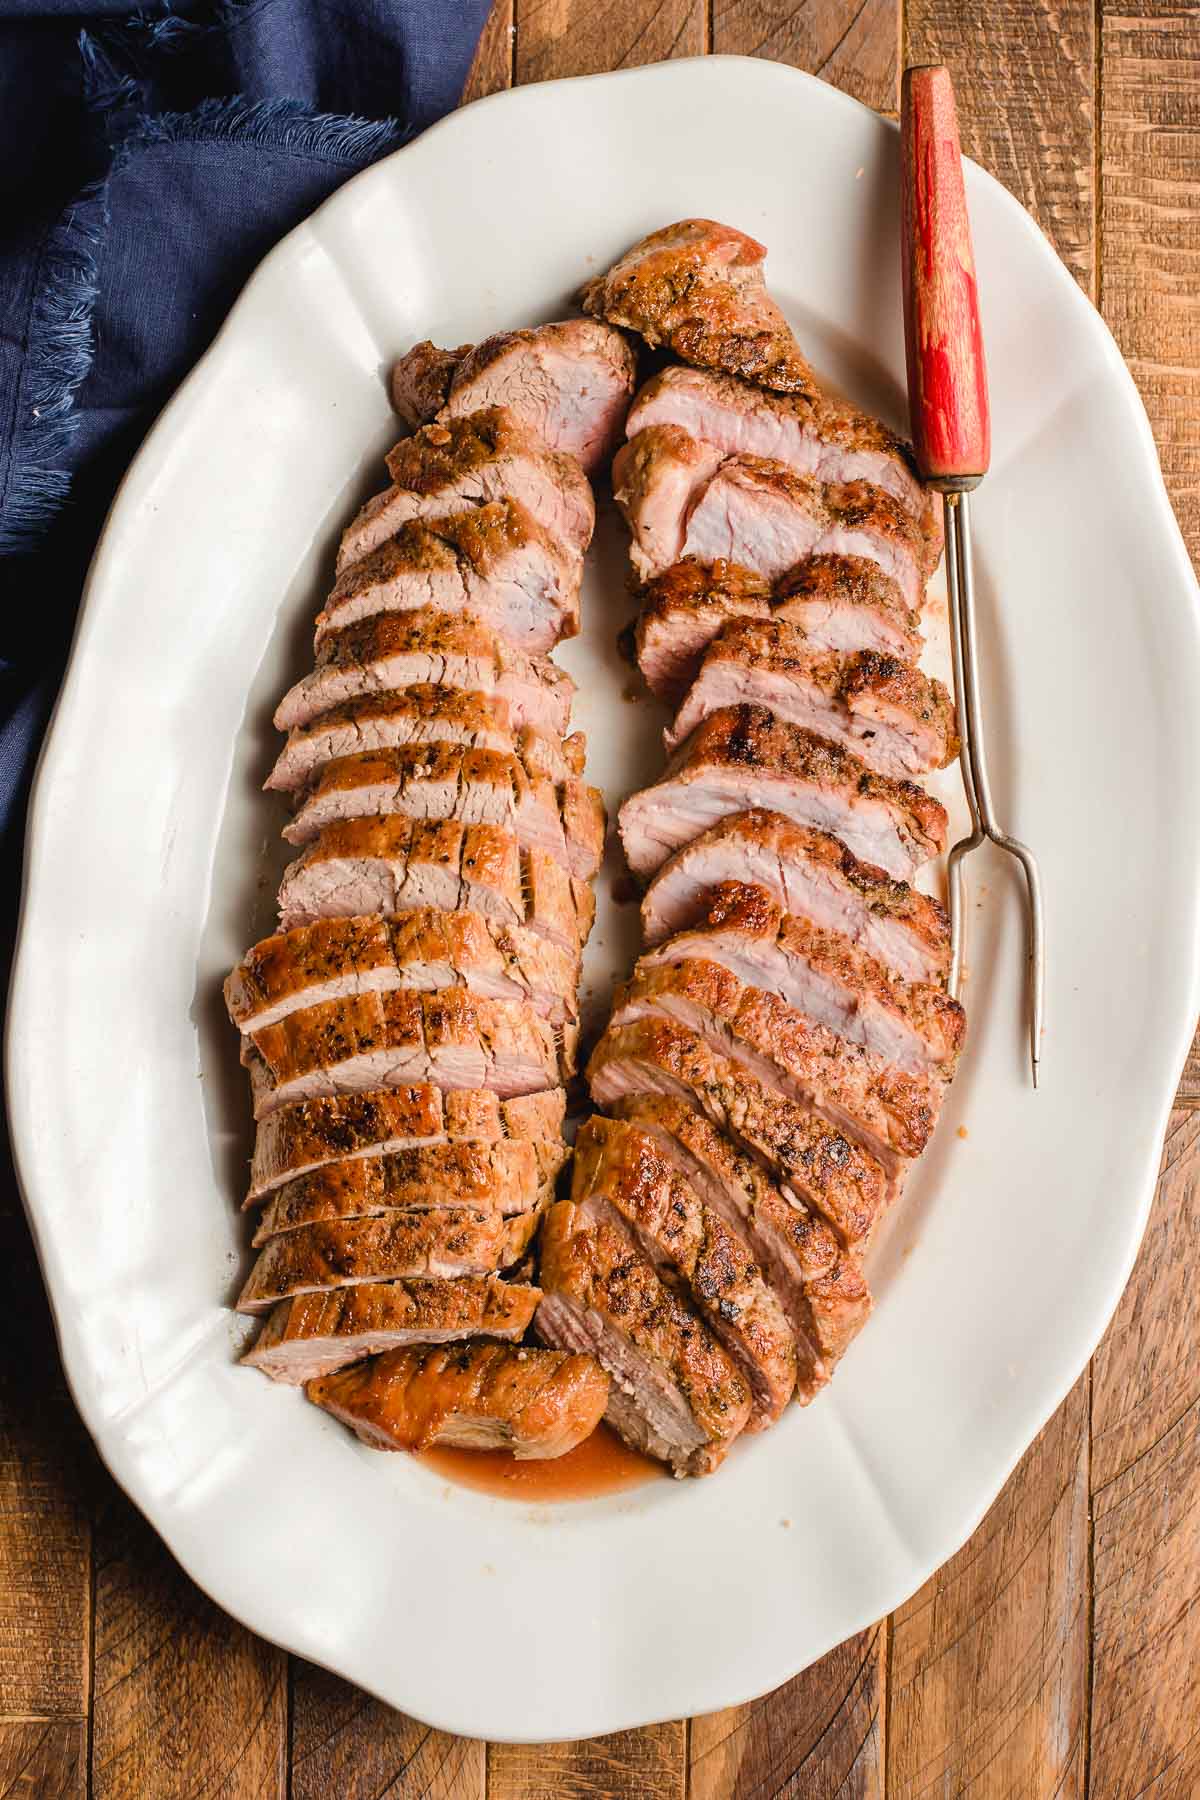 A serving platter full of pork tenderloin slices.